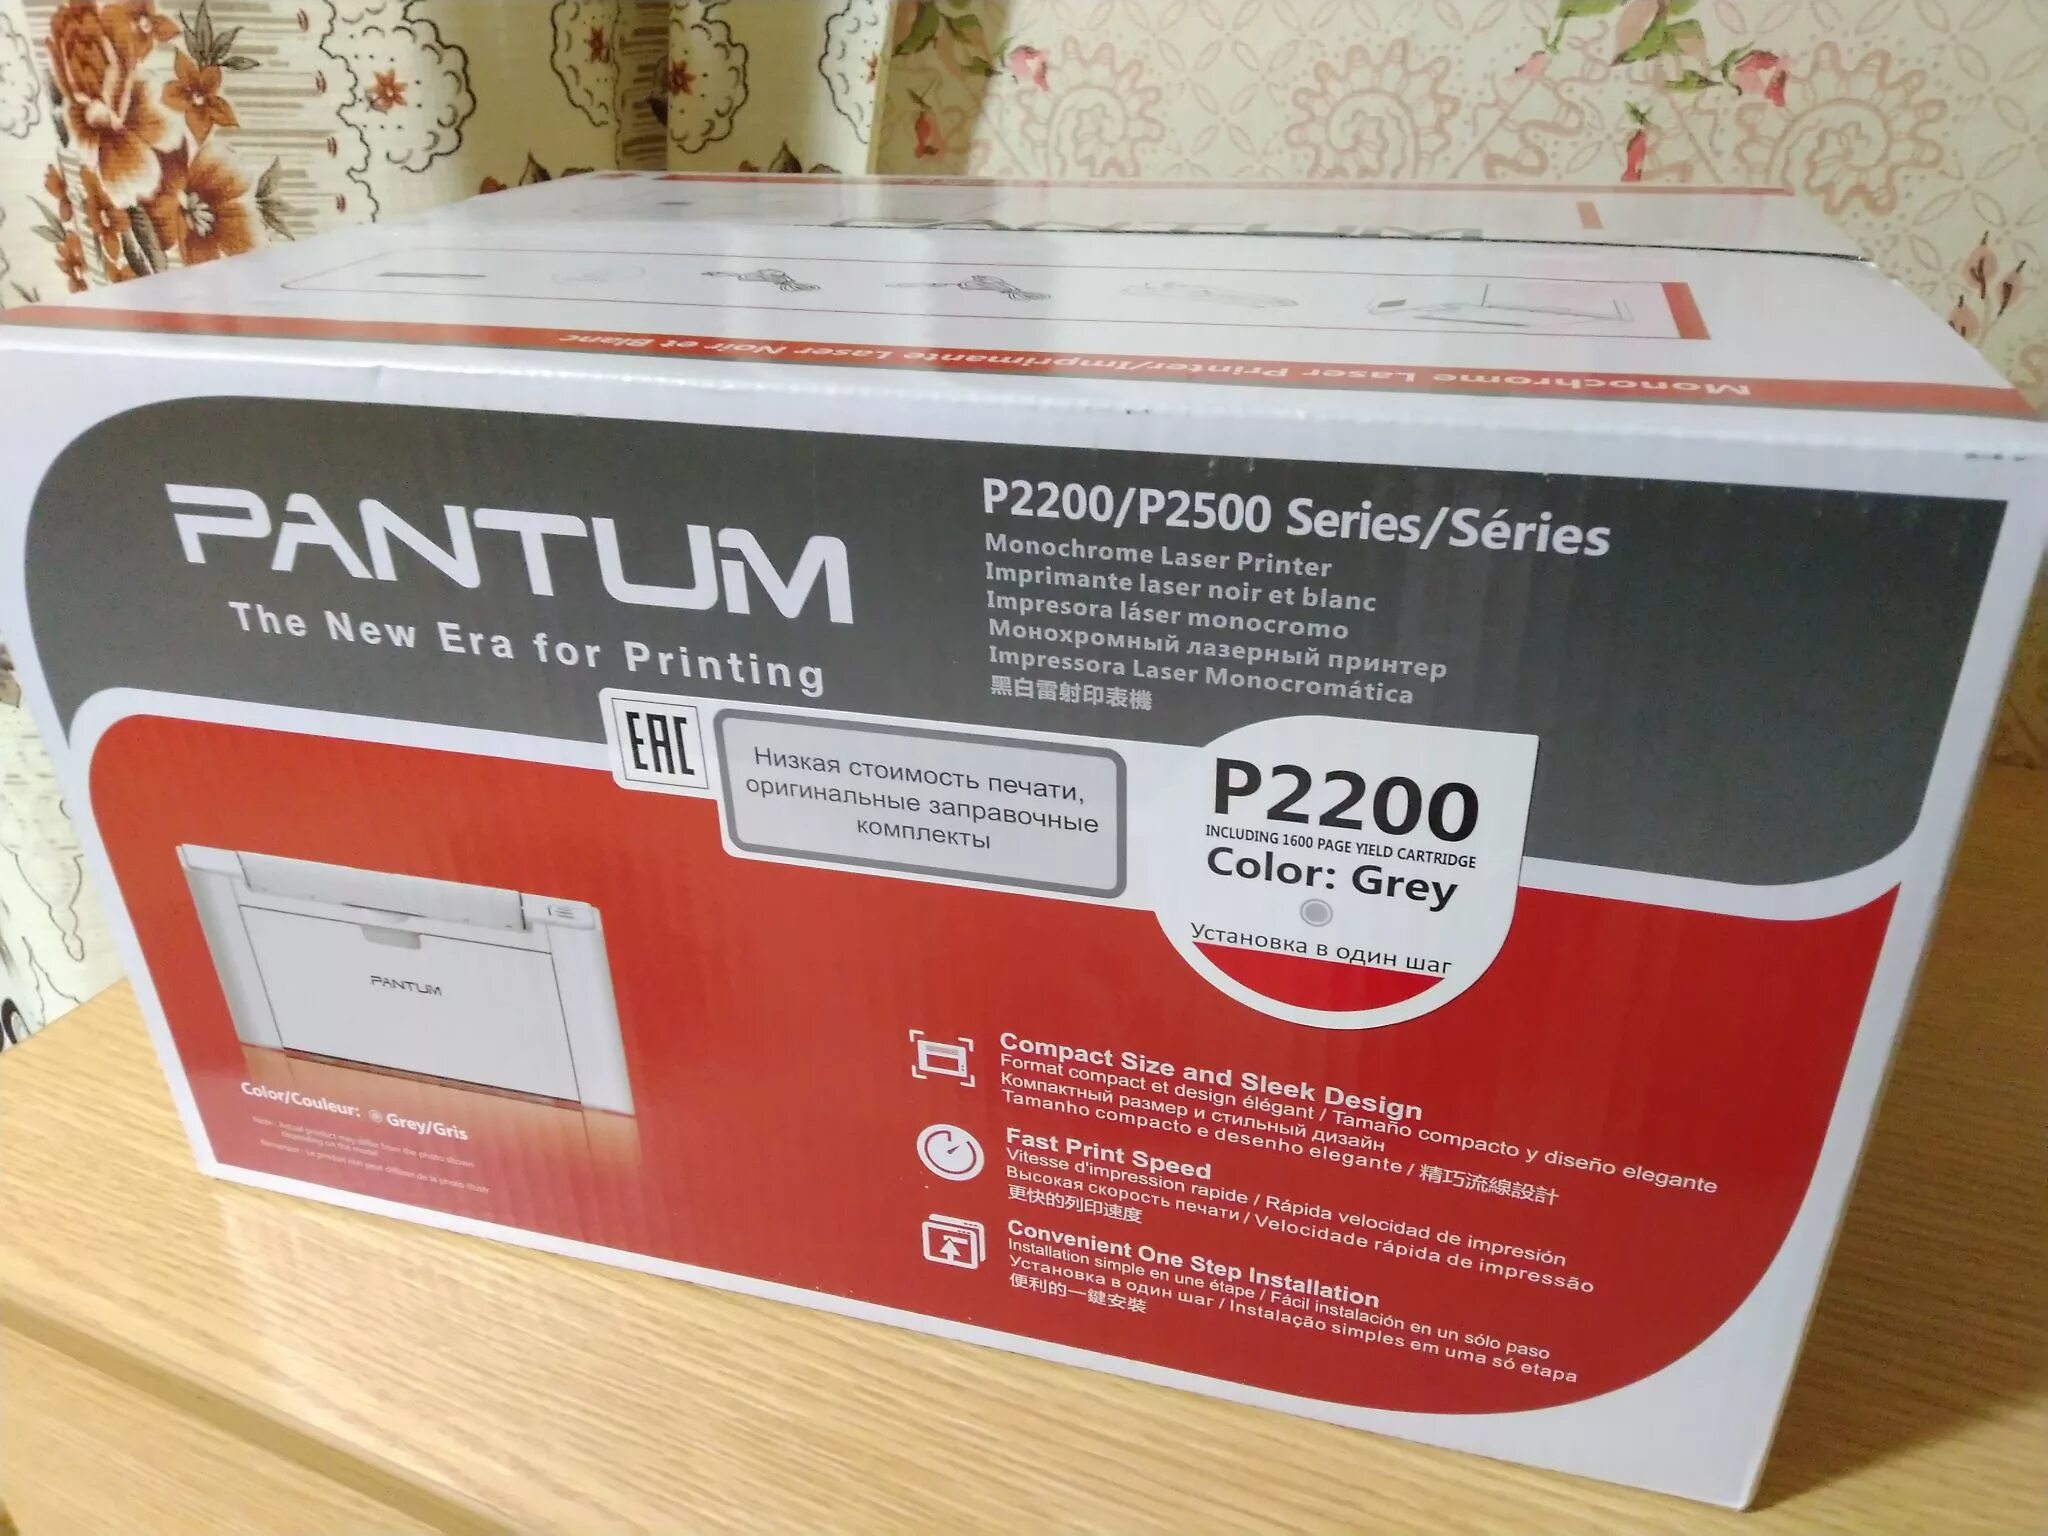 Принтер p2200 series. Принтер Pantum p2516. Принтер лазерный Pantum p2200. Pantum принтер Pantum p2200. Картридж для принтера Pantum p2200.